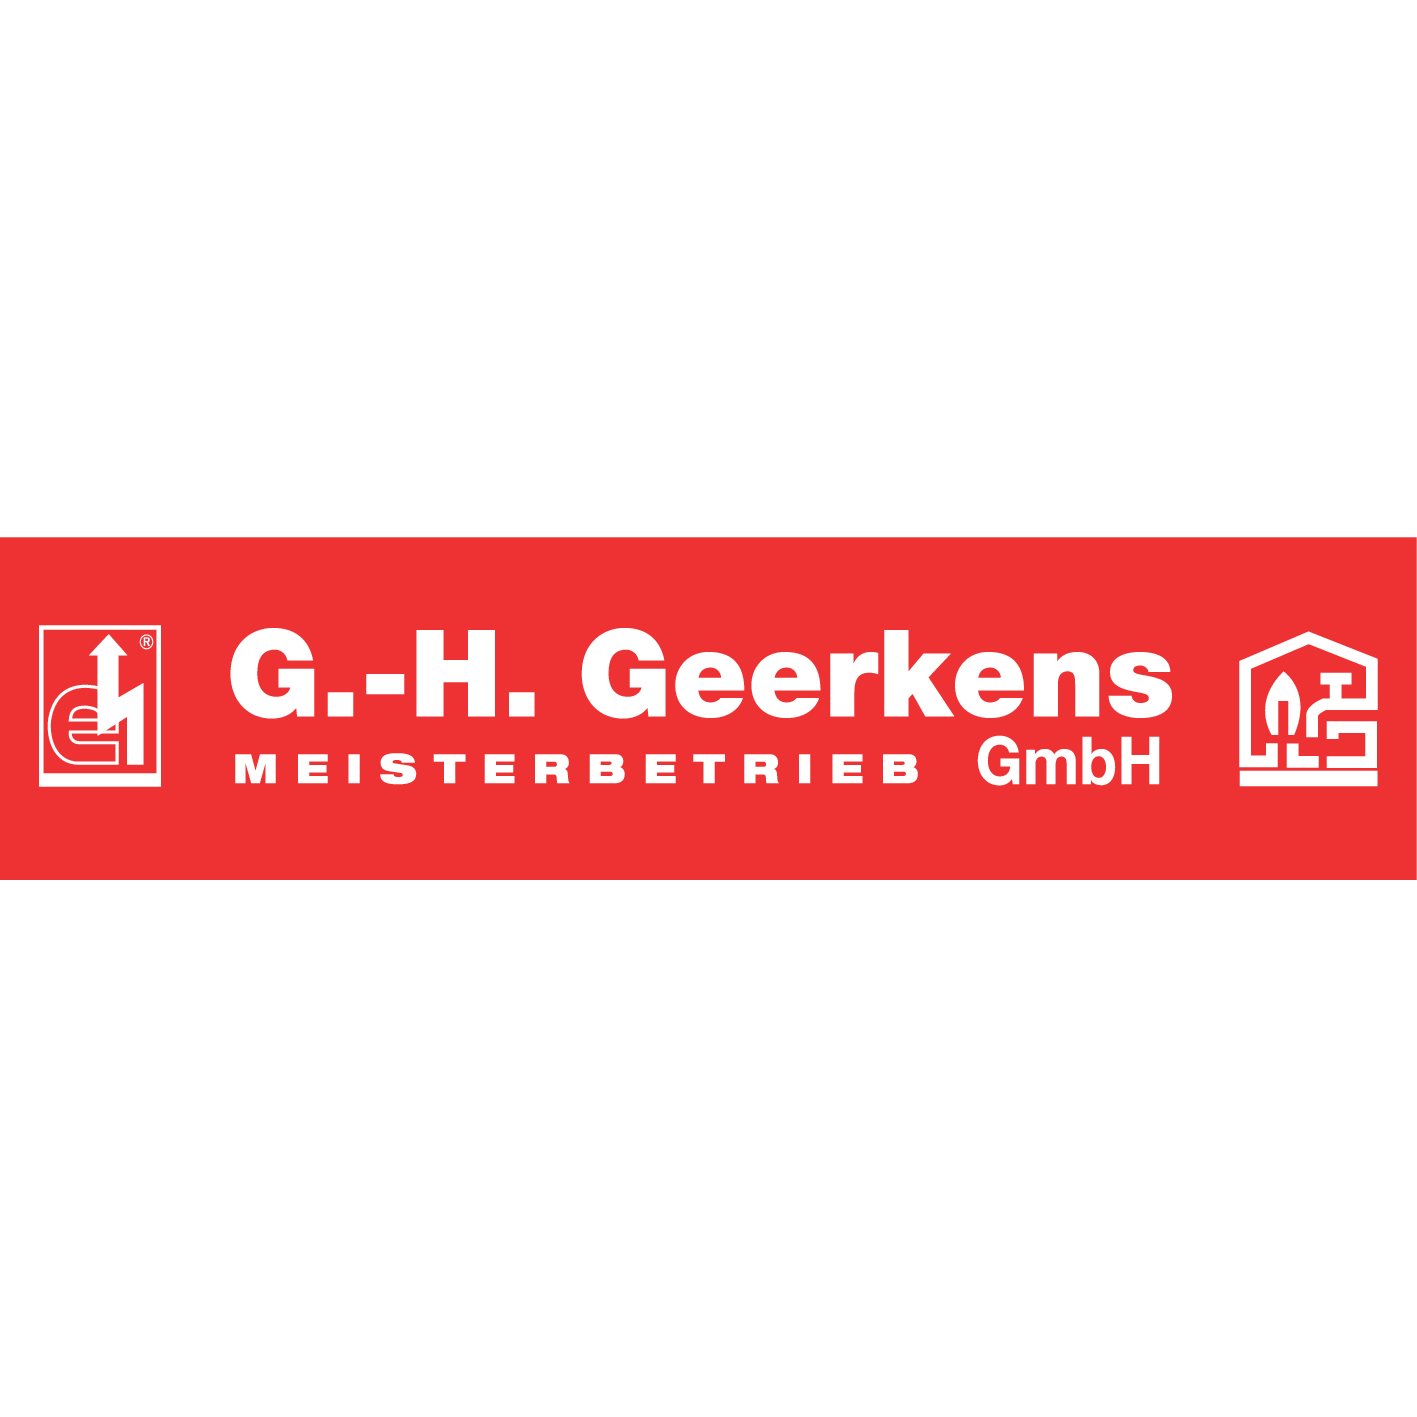 Bild zu Gerd-Hugo Geerkens GmbH in Wachtendonk